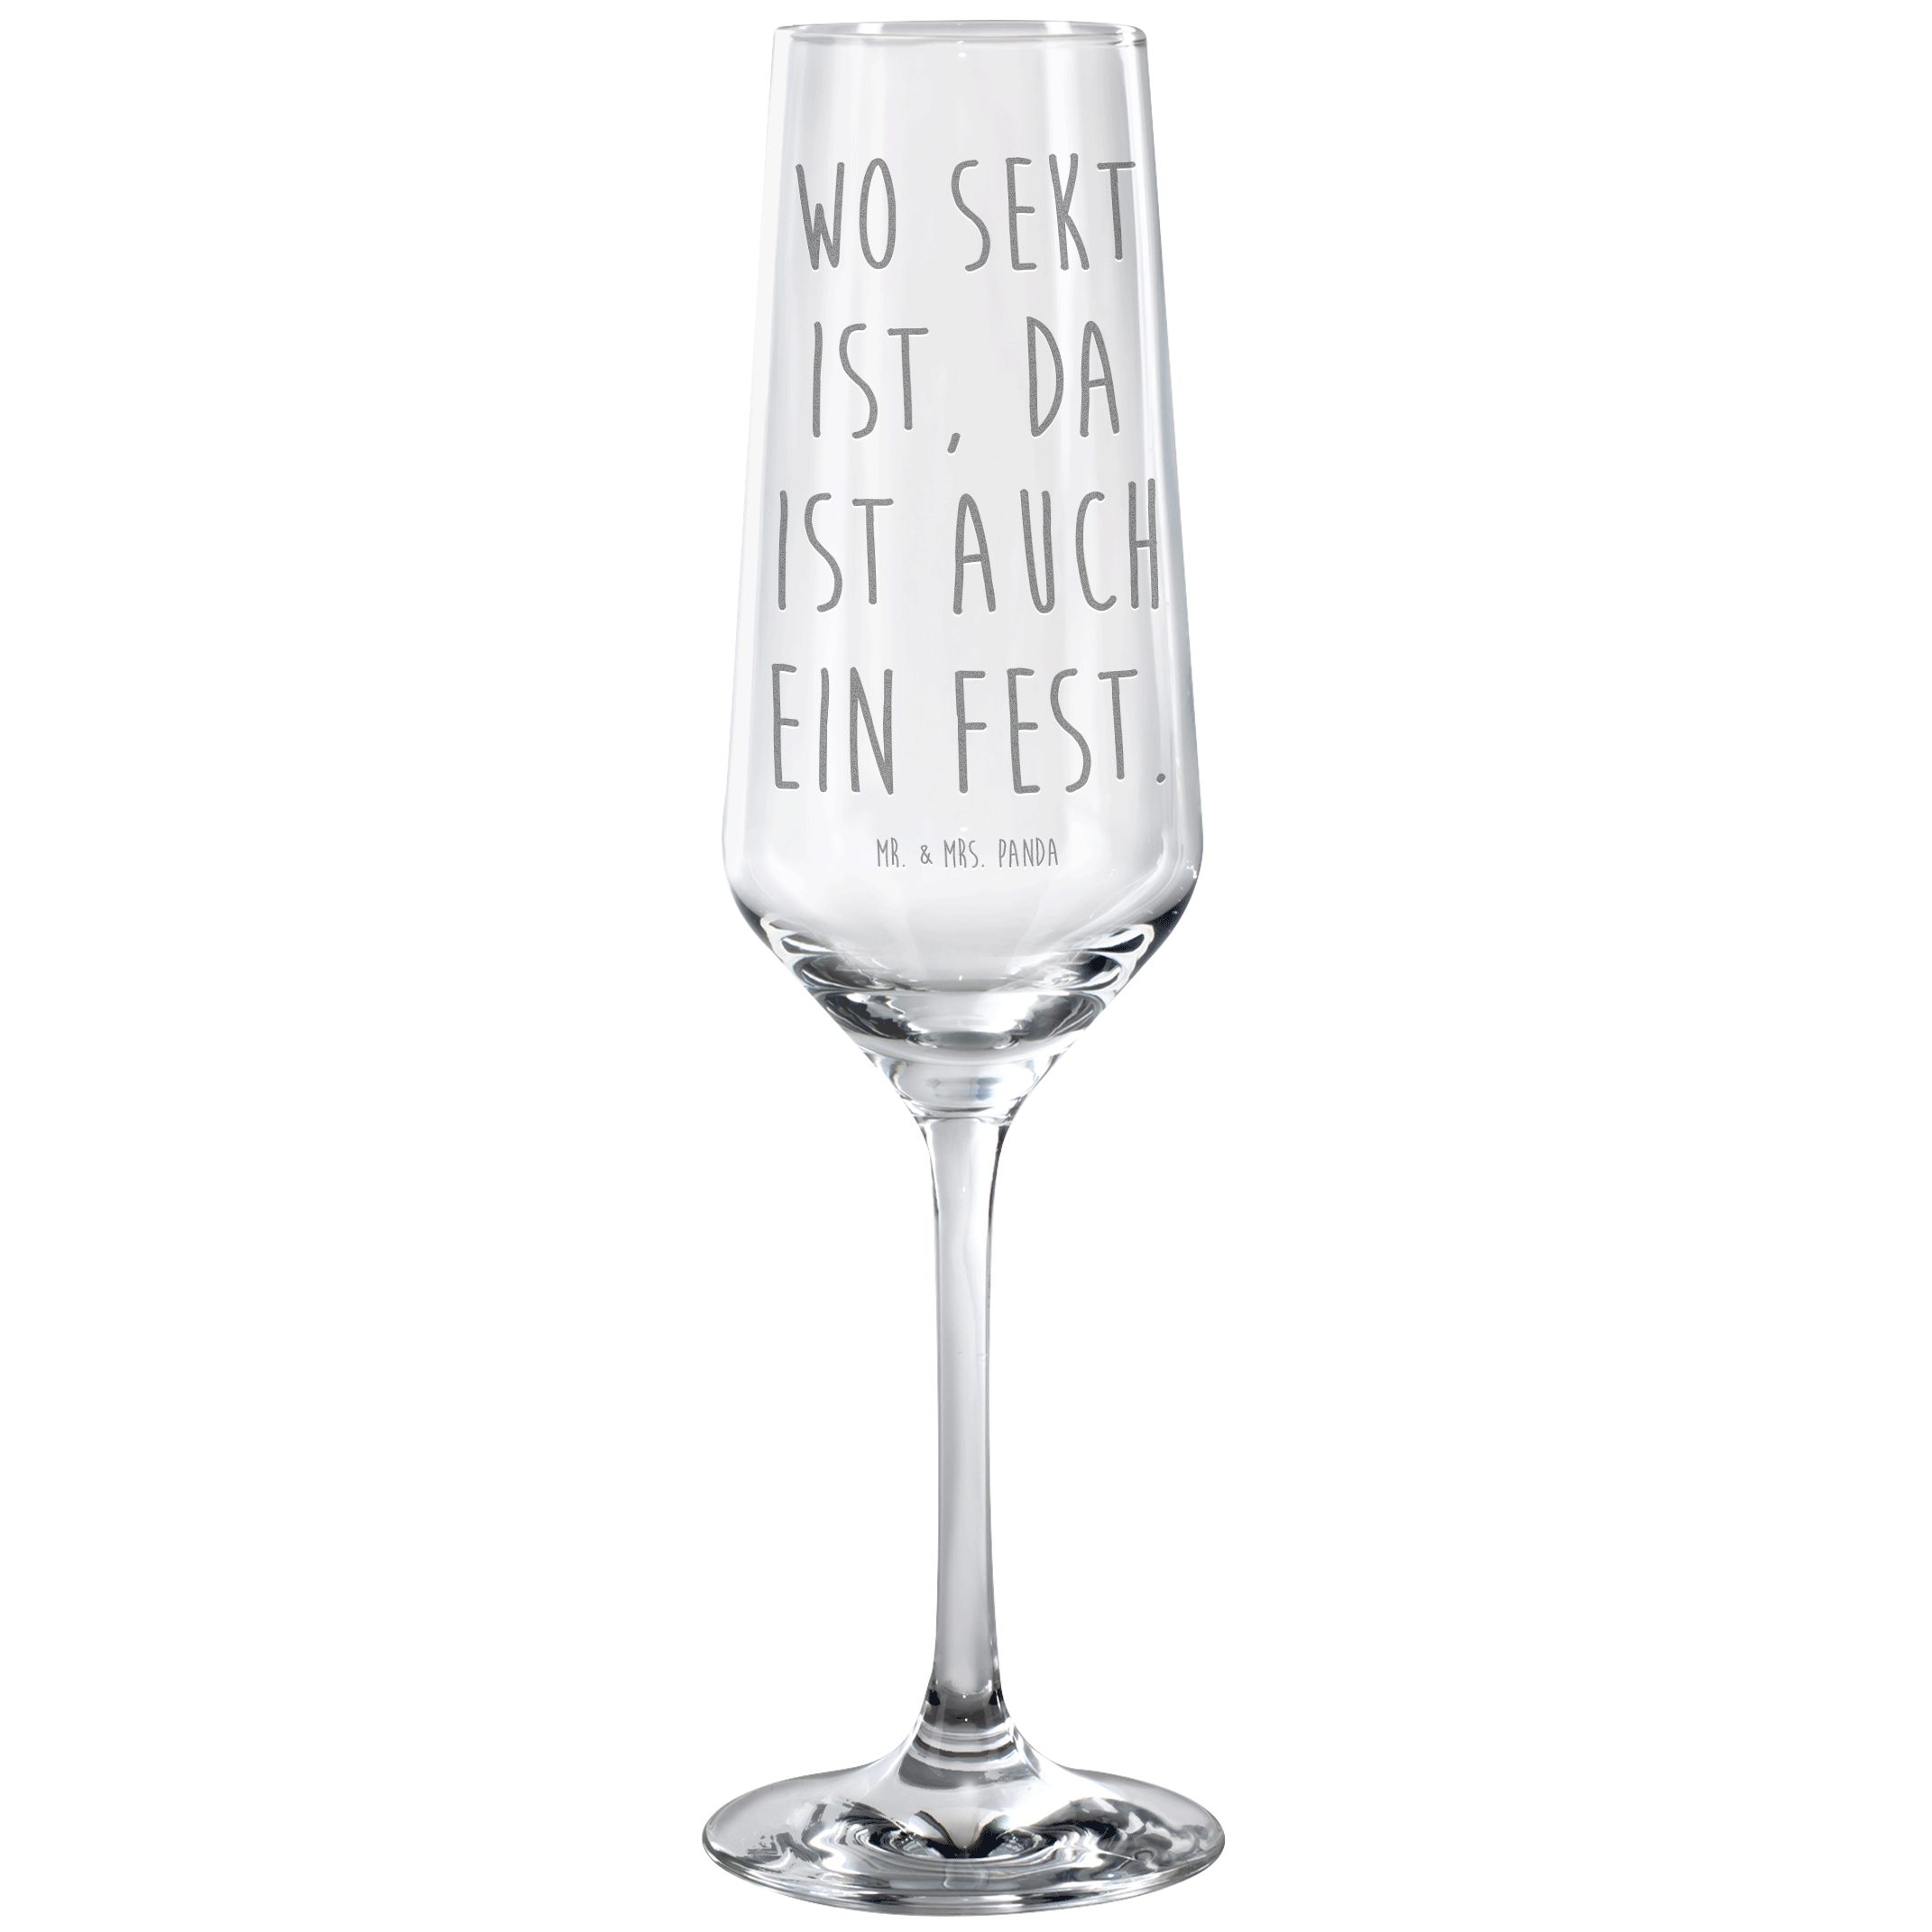 Mr. & Mrs. Panda Sektglas Wo Sekt ist, da ist auch ein Fest. - Transparent - Geschenk, Sektglas, Premium Glas, Detailreiche Gravur